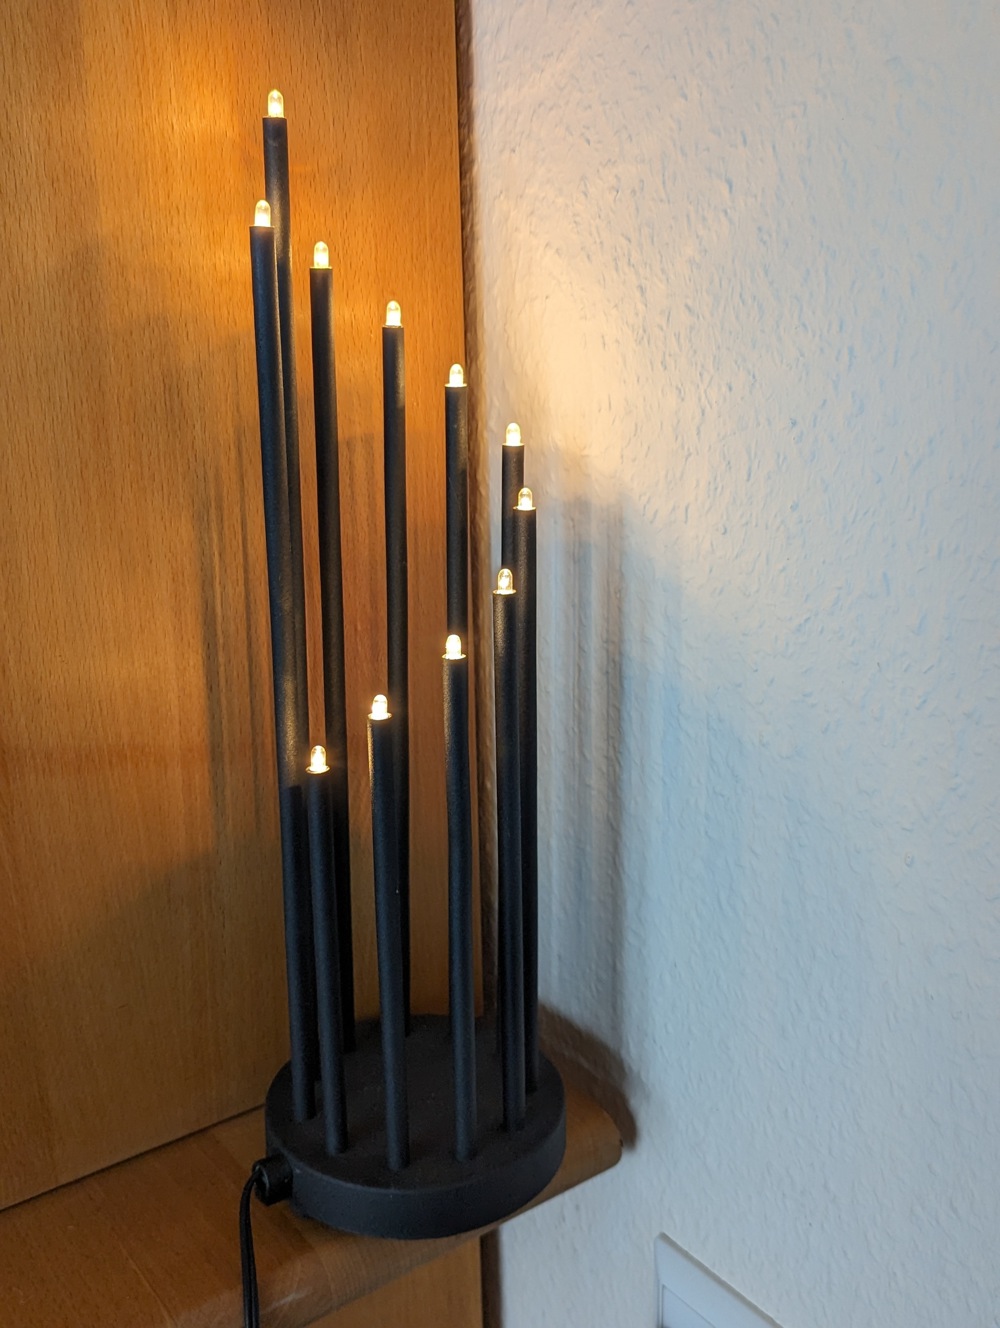 Lampe mit 11 Strahlern - Leuchtstäben